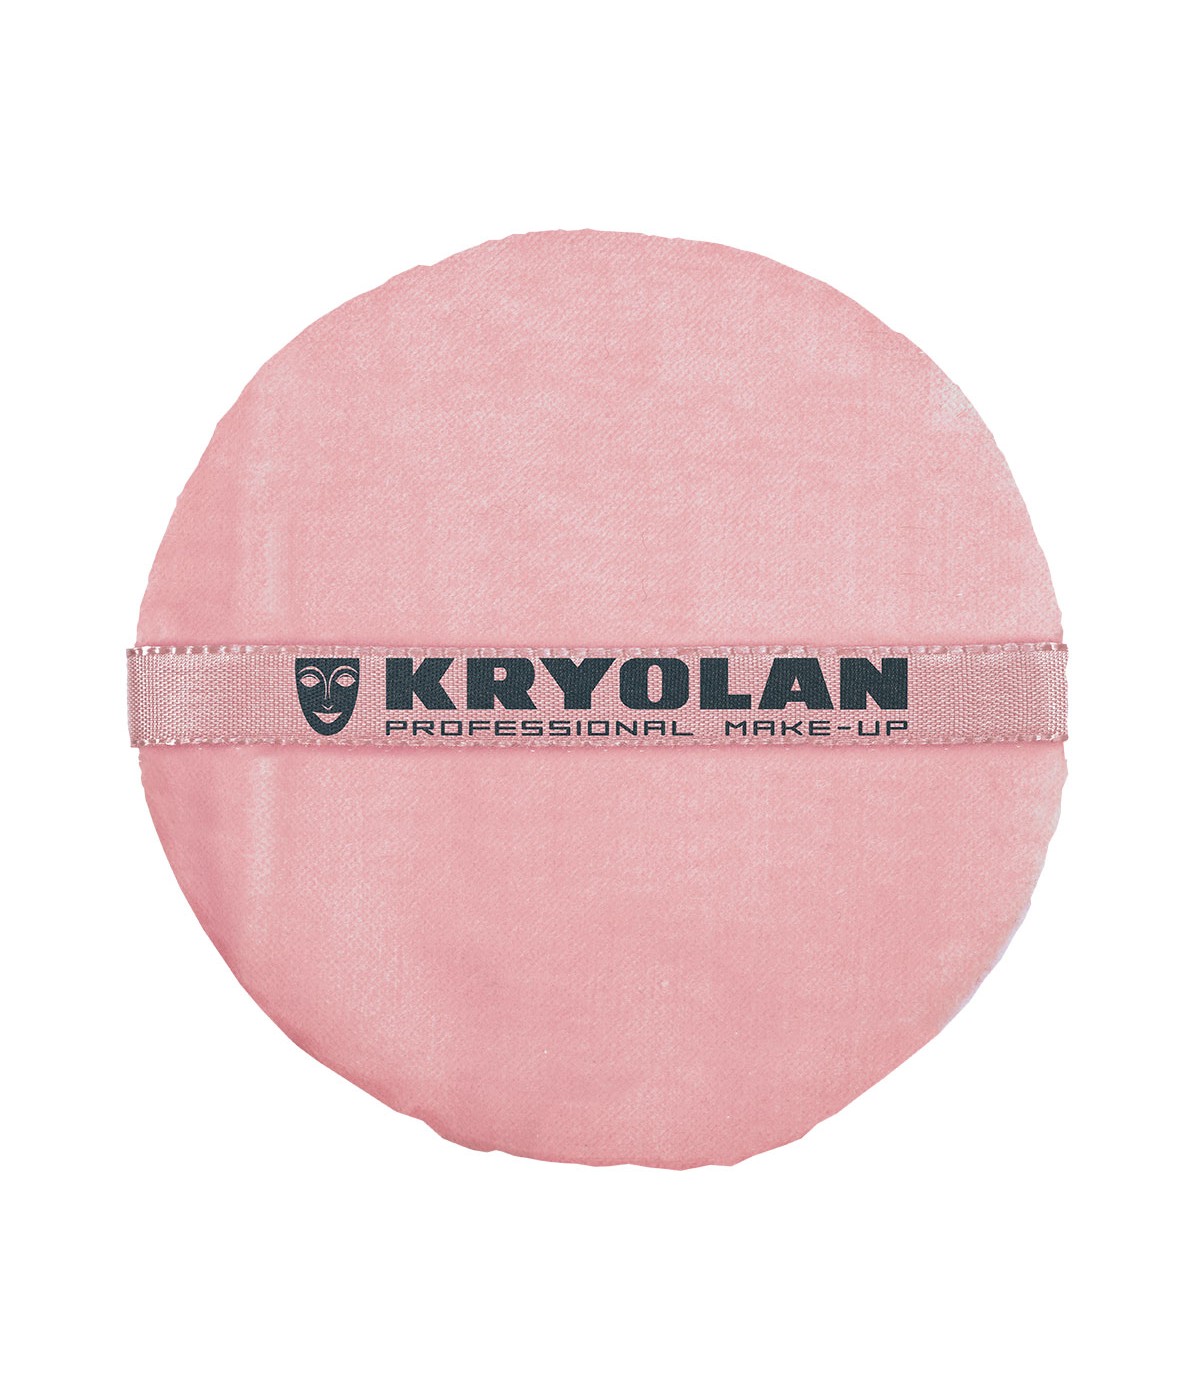 Kyolan Puderquaste, rosa 12cm